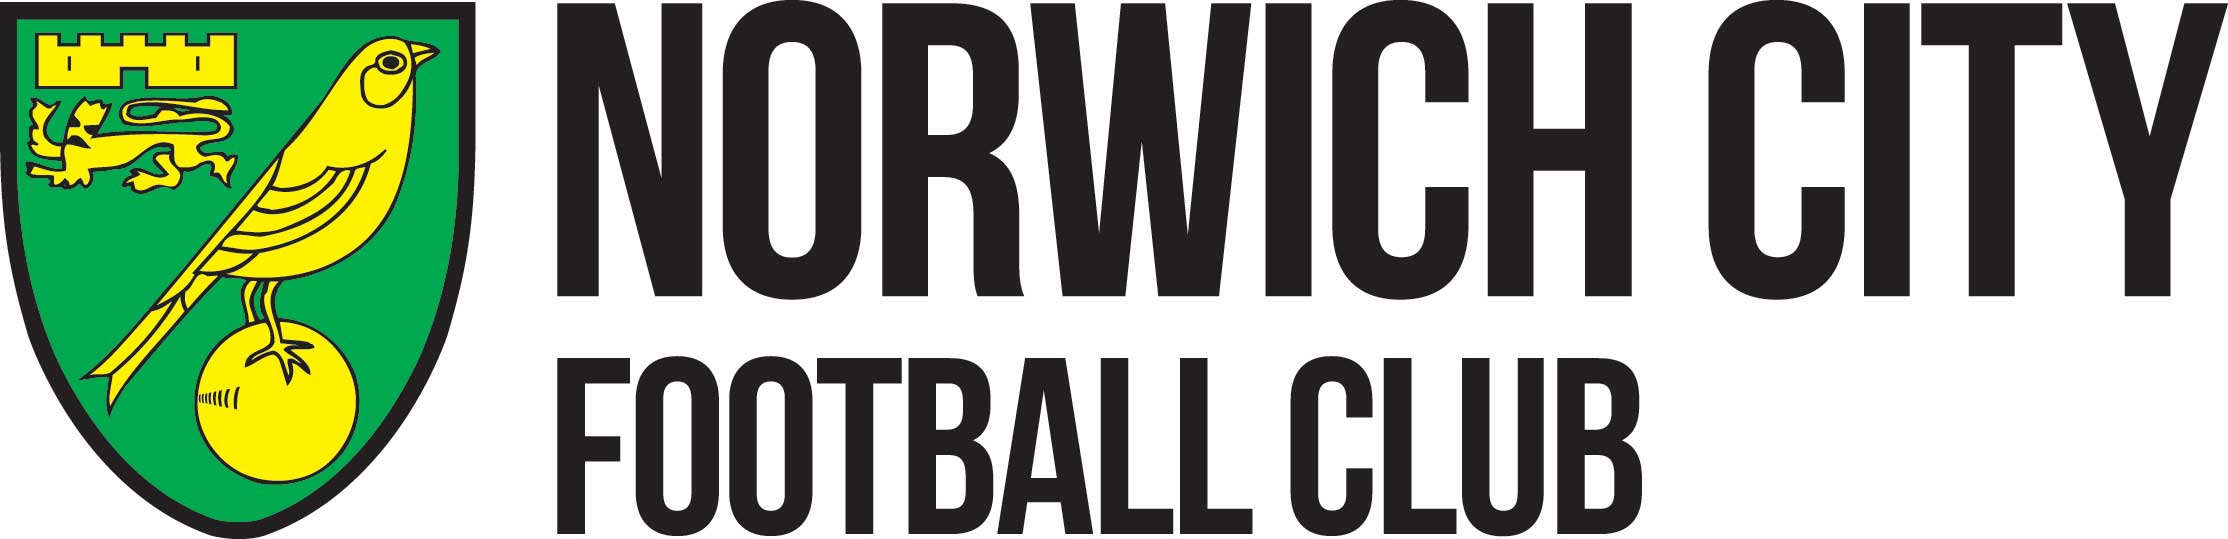 Norwich City Logo - Norwich FC